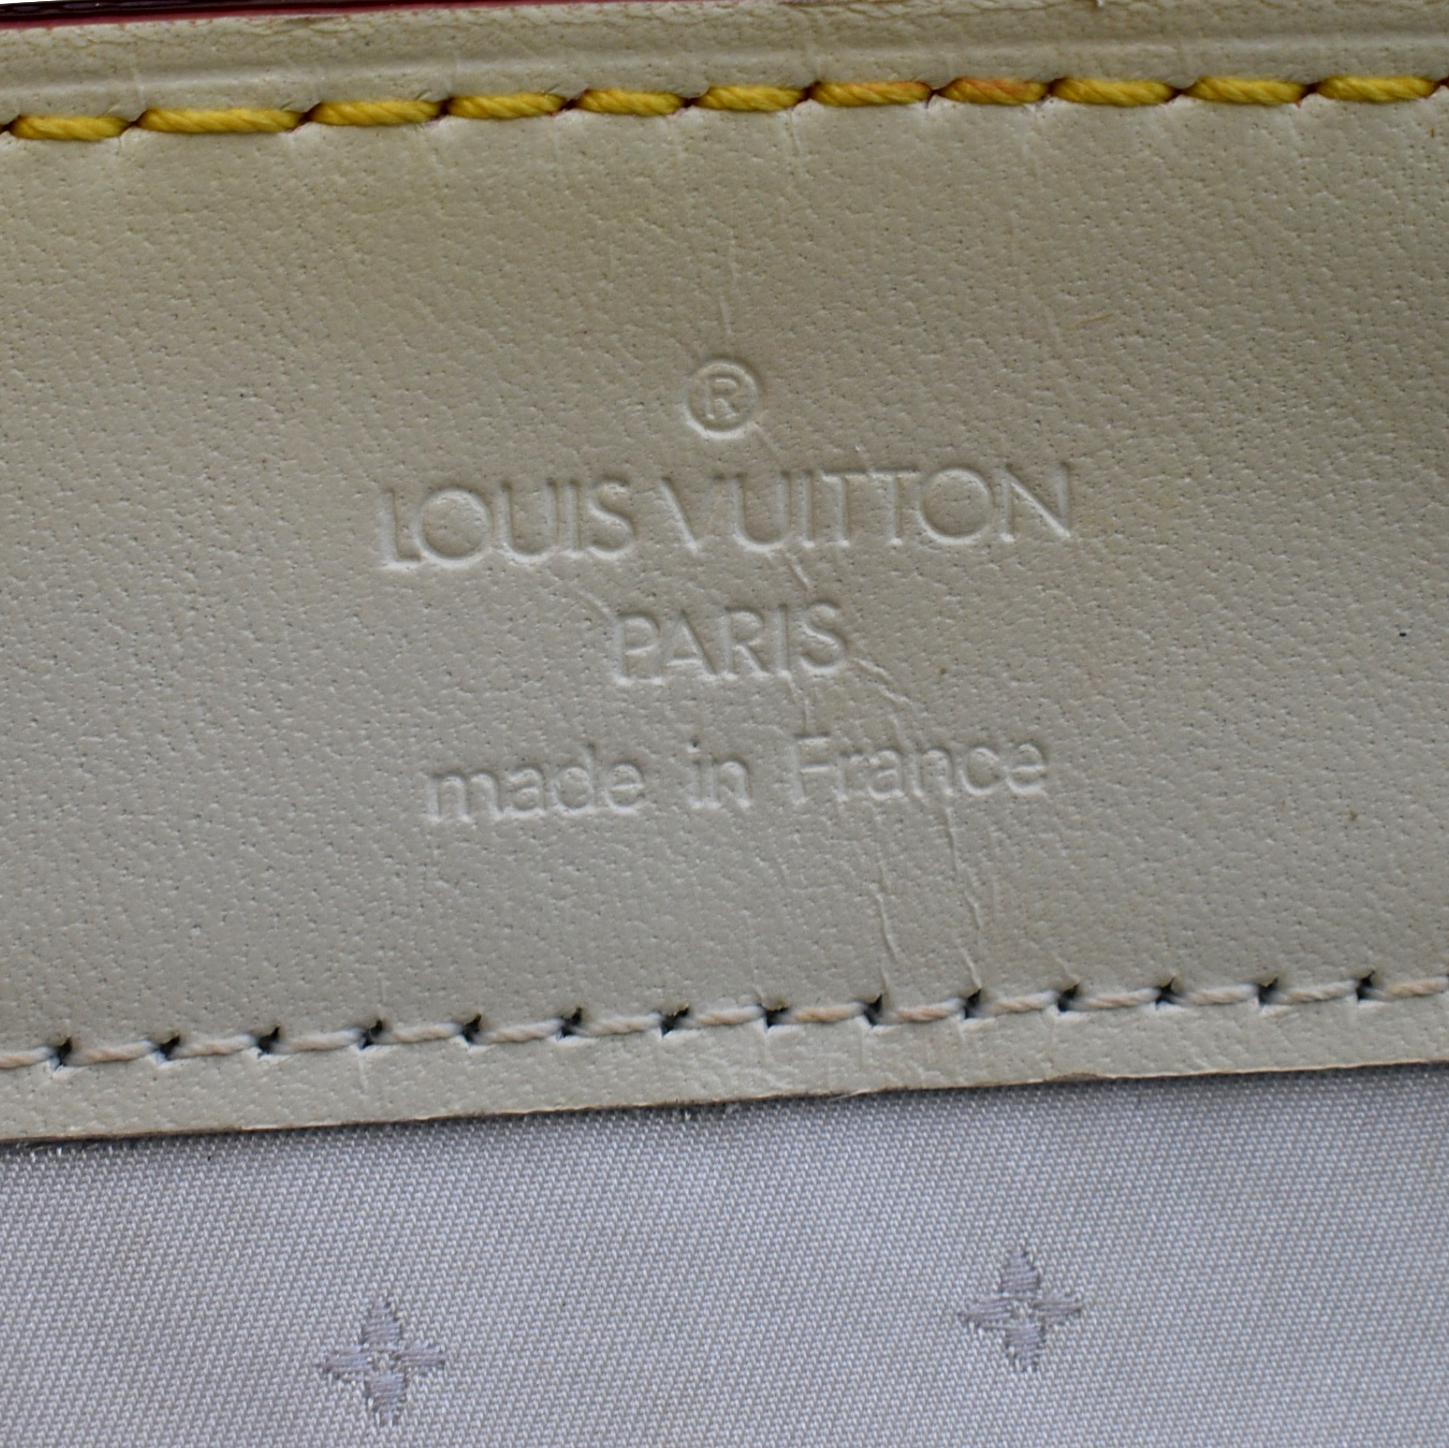 Louis Vuitton Light Blue Suhali Leather Le Talentueux Bag Louis Vuitton